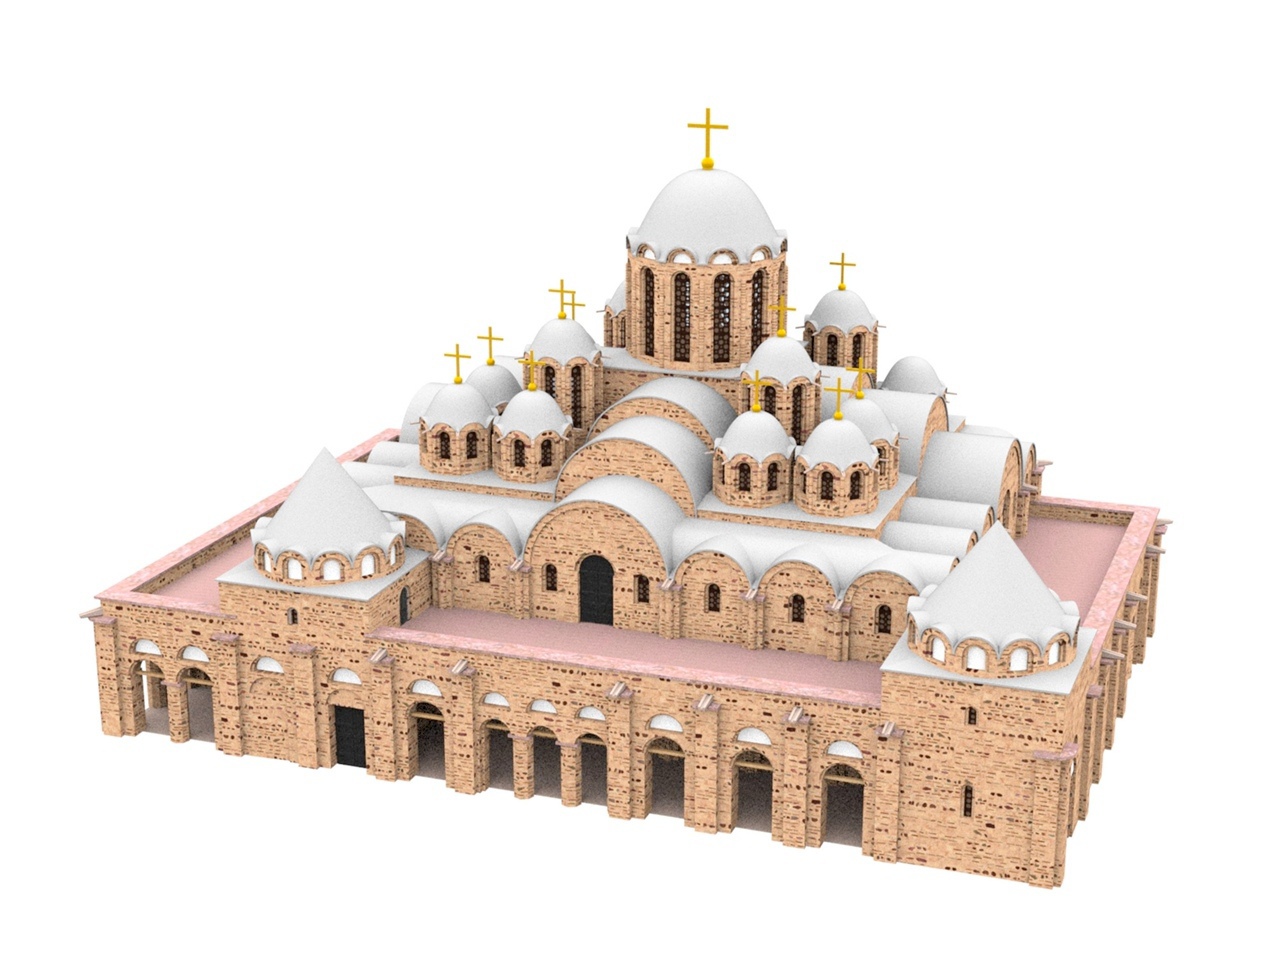 софийский собор 11 век